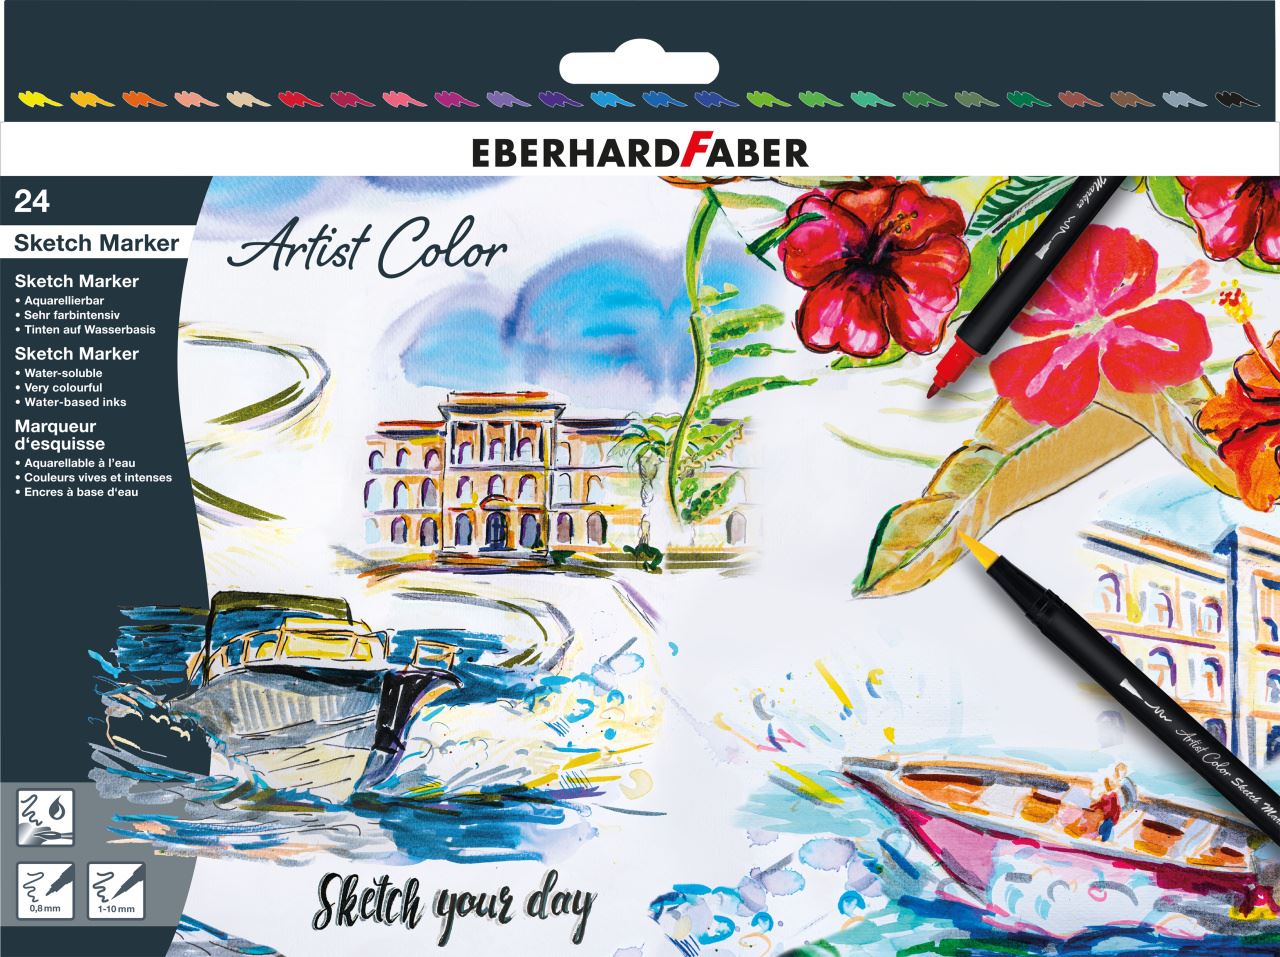 Eberhard-Faber - Artist Color Sketch Marker, Kartonetui mit 24 Farben